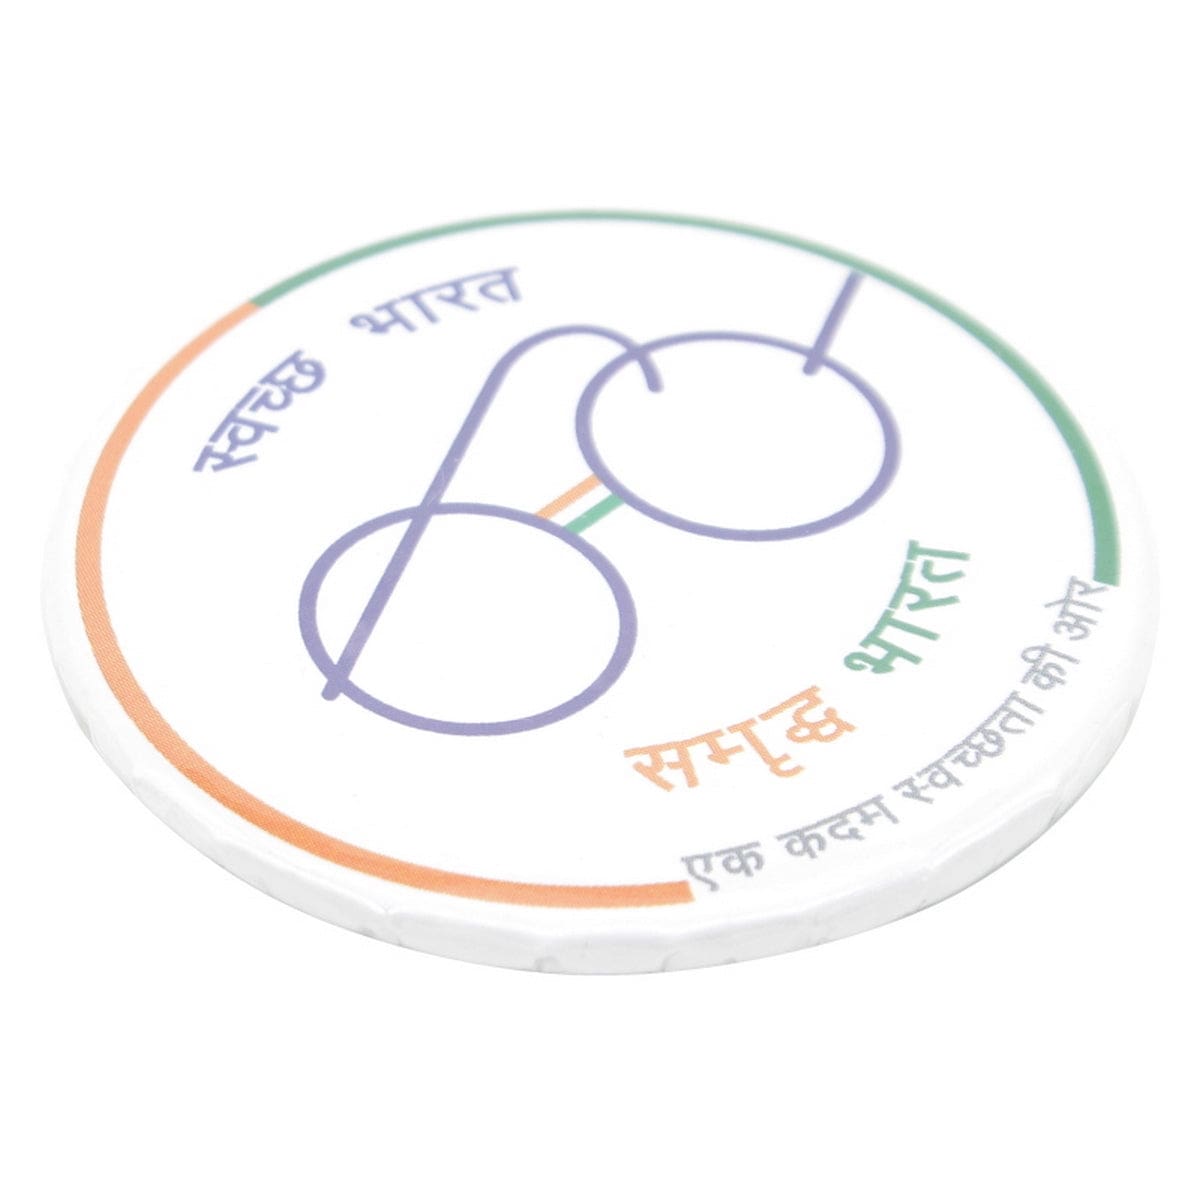 jags-mumbai Button Round Badges Swacha Bharat 58MM